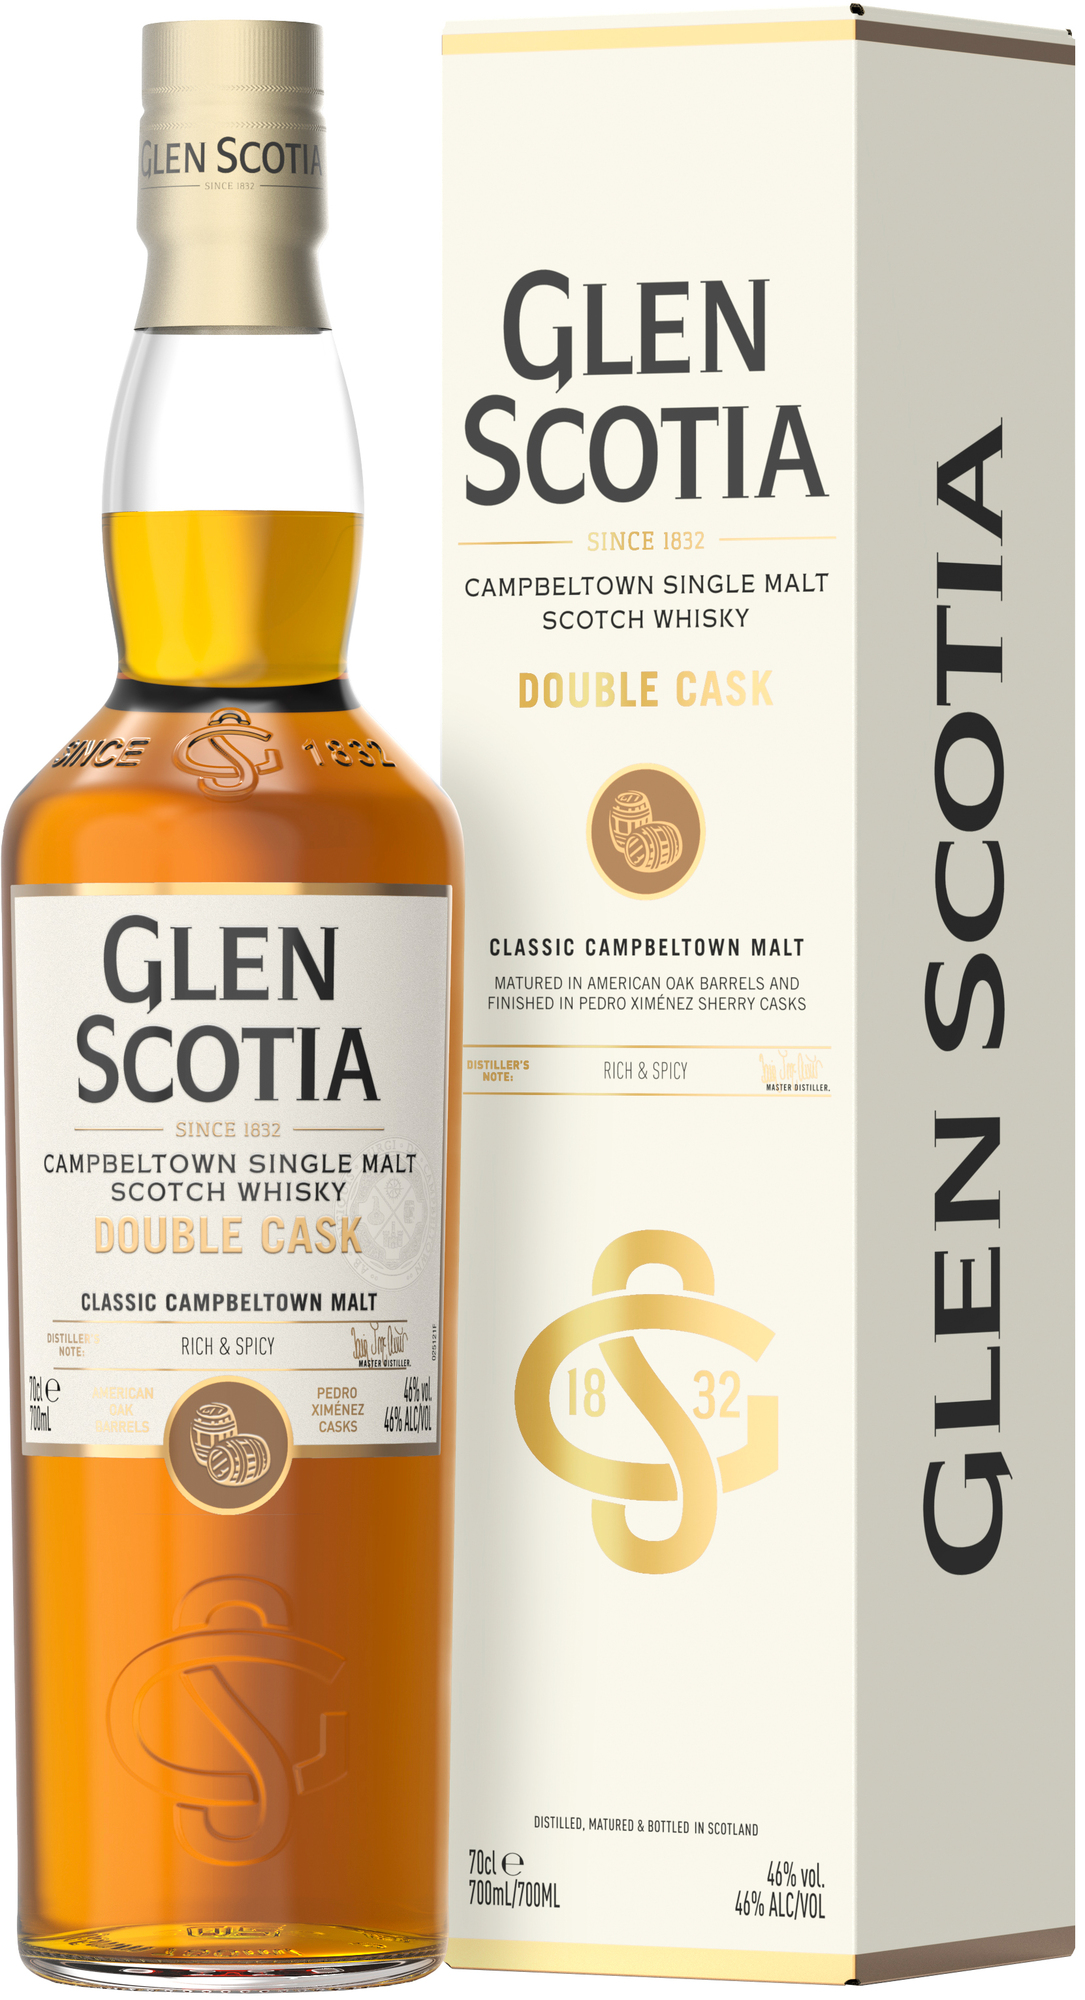 Glen Scotia Double Cask 46% 0,7l (darčekové balenie kazeta)